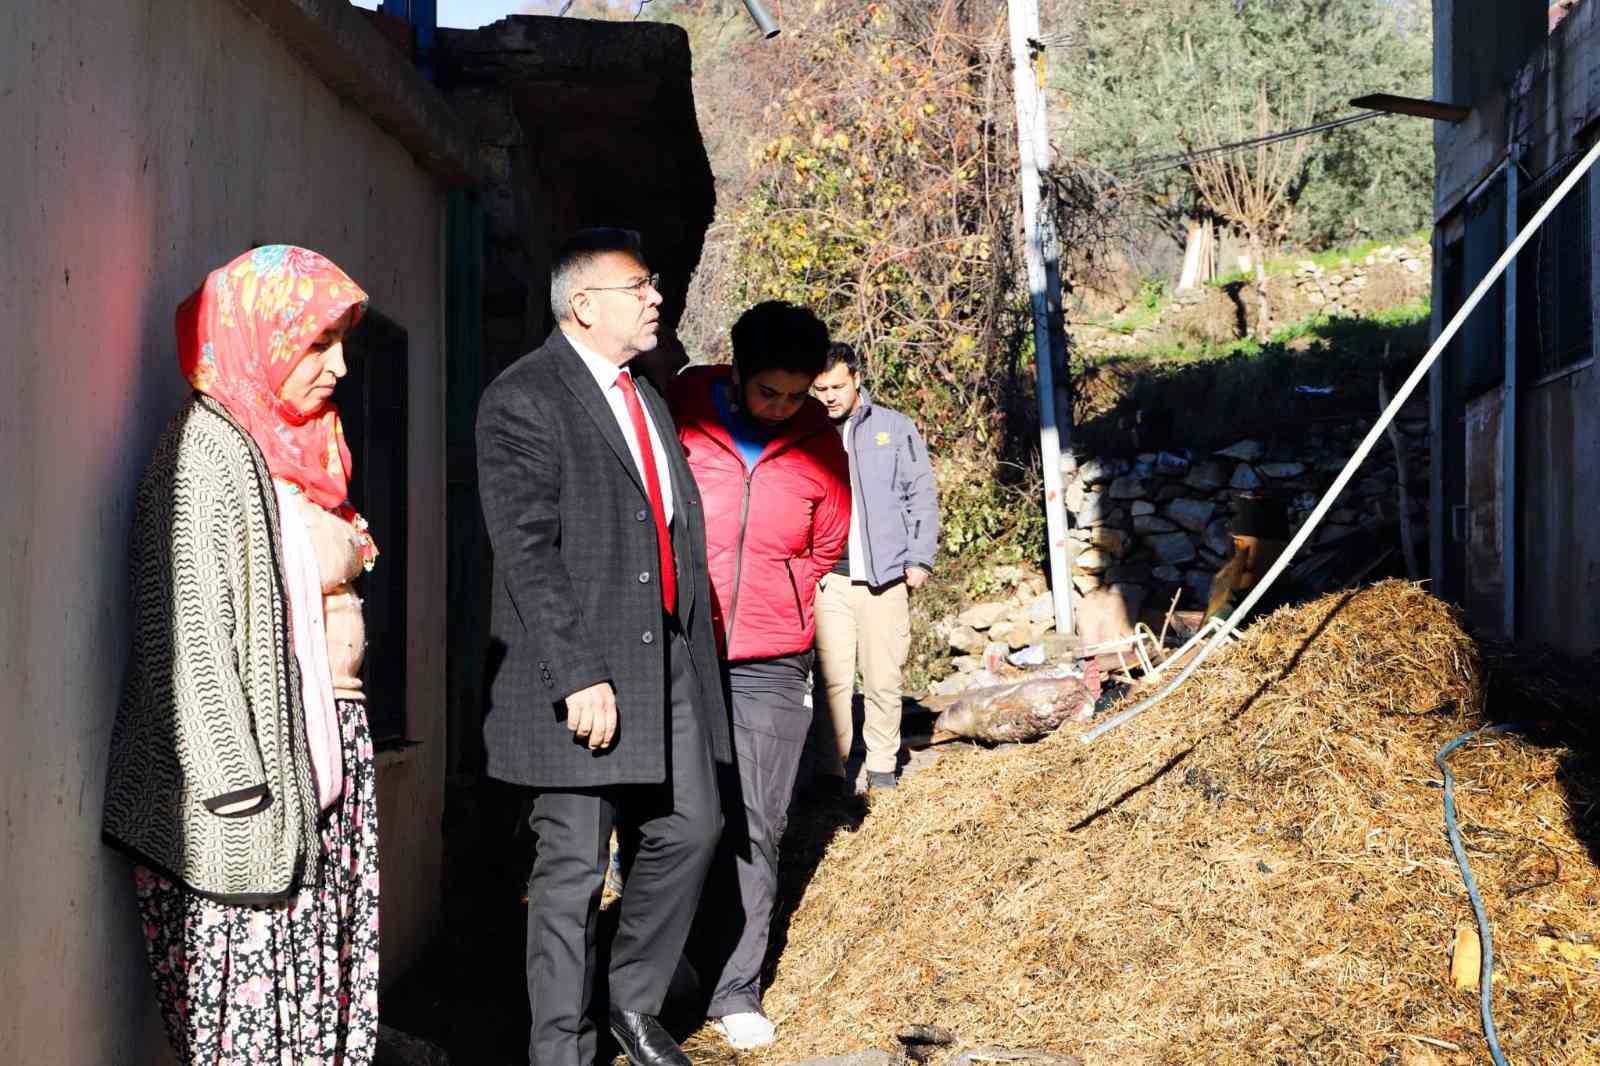 Başkan Güler, Akçaköy’de evleri yanan Anlaş Ailesi’ne ziyaret etti #aydin